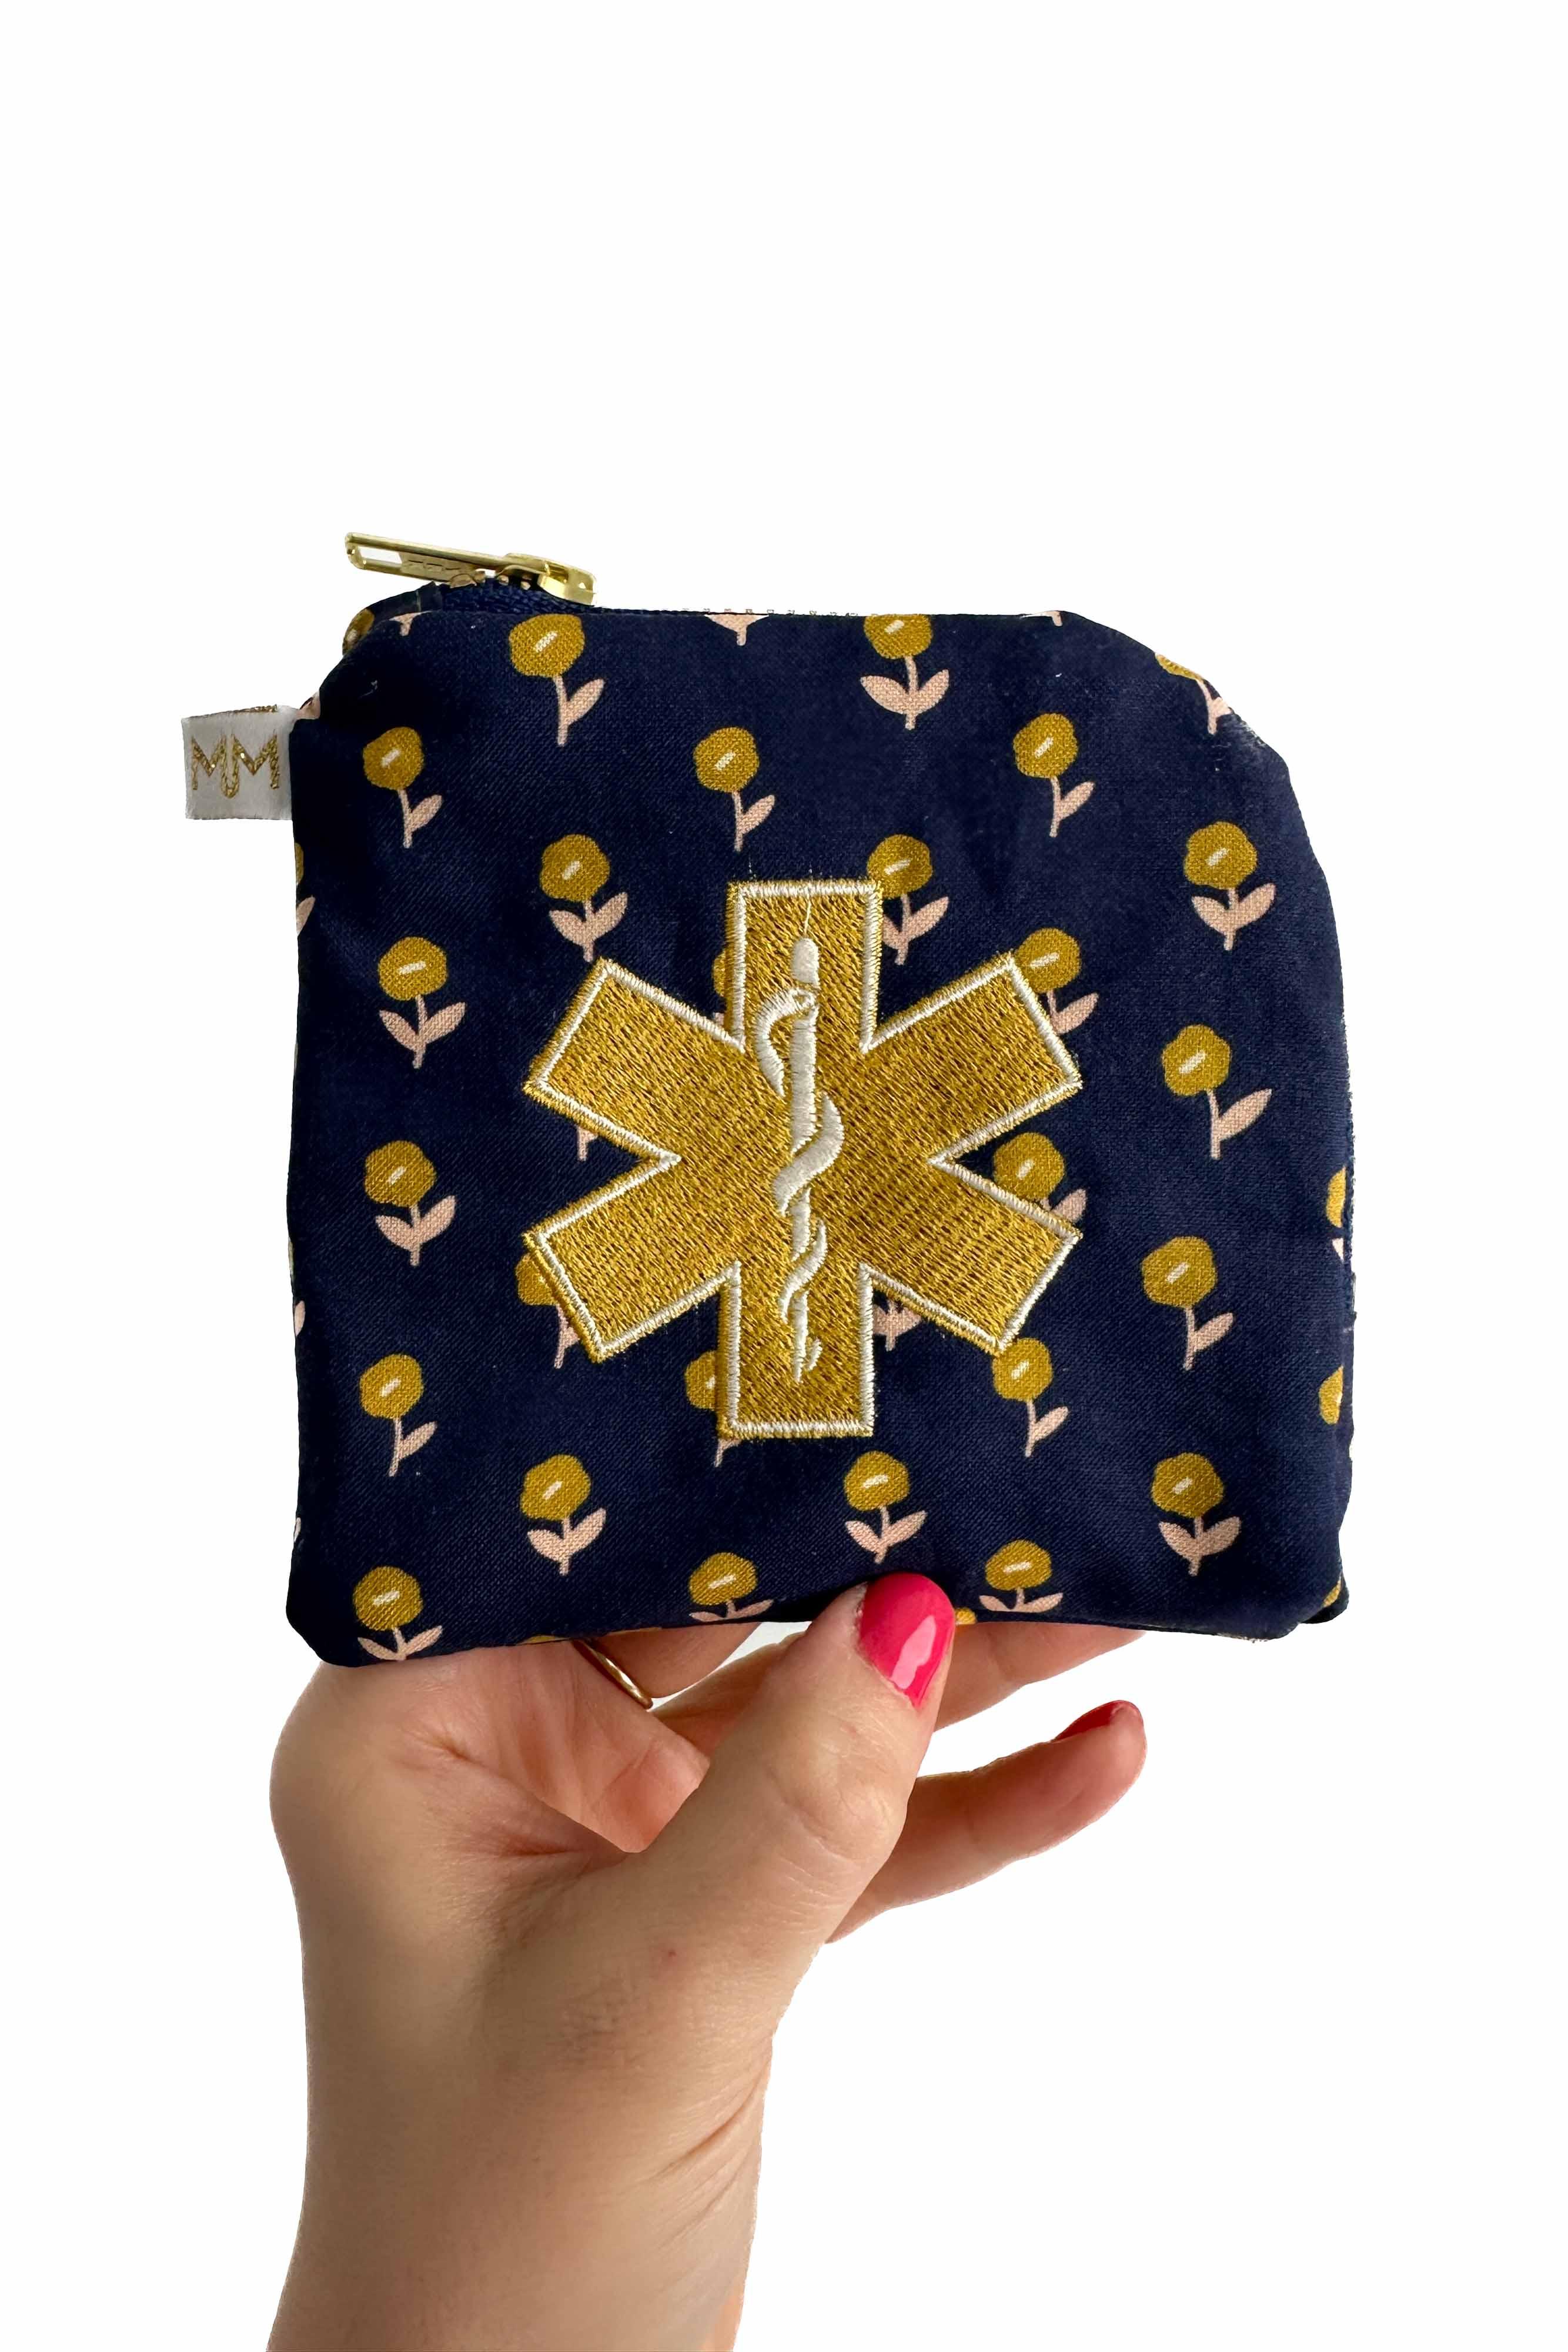 Simply Golden Mini Travel Bag - Modern Makerie